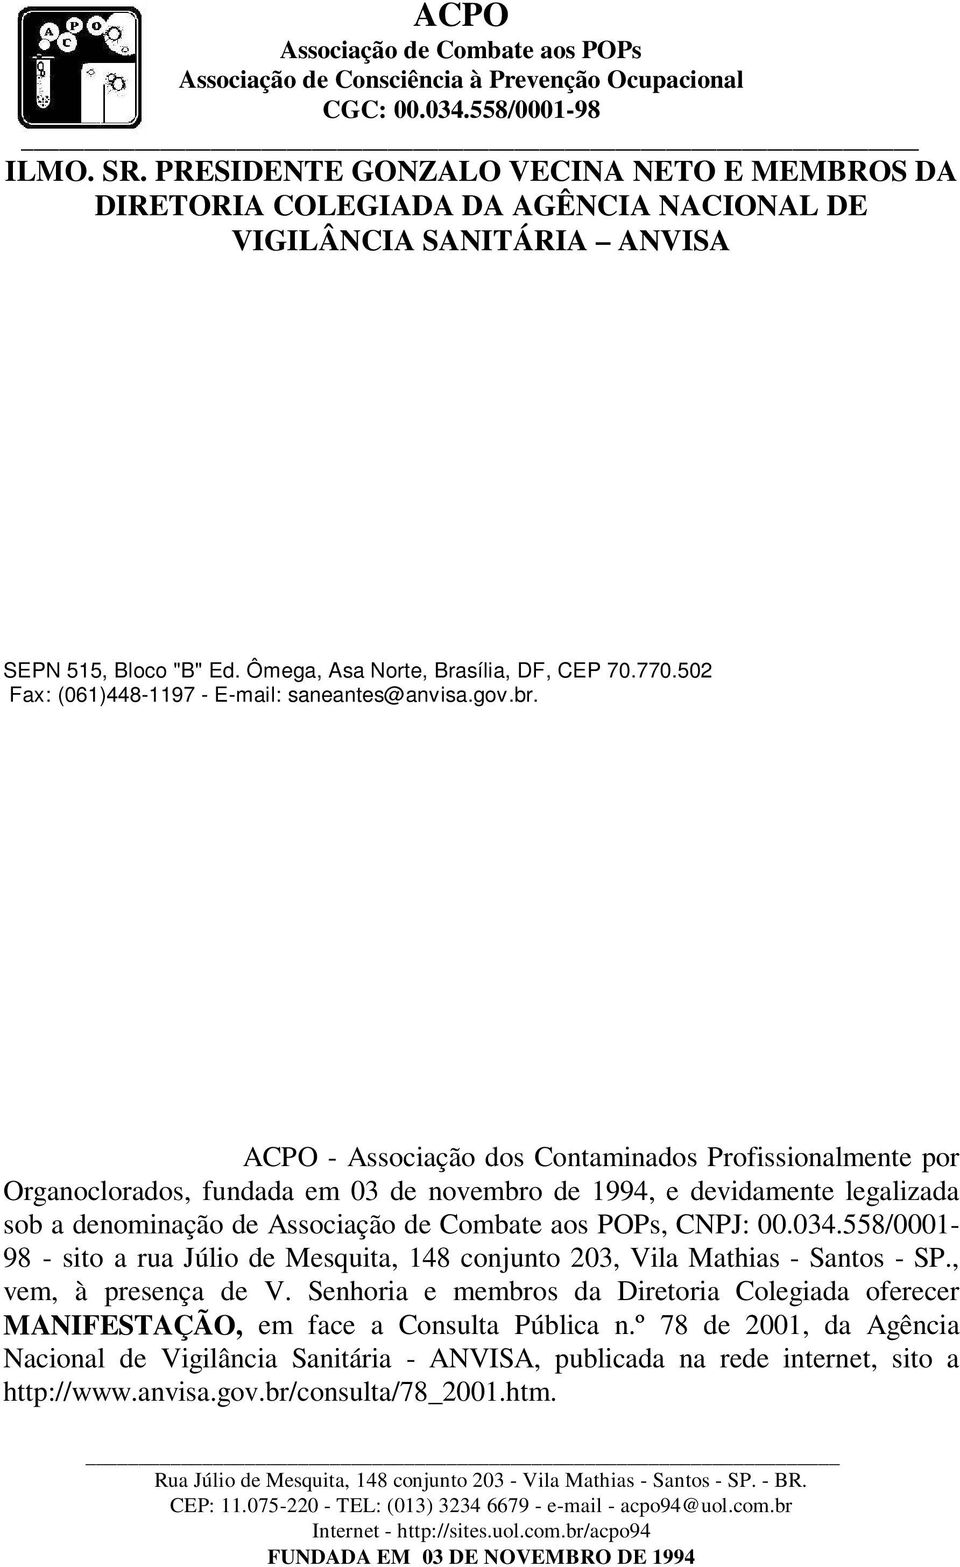 ACPO - Associação dos Contaminados Profissionalmente por Organoclorados, fundada em 03 de novembro de 1994, e devidamente legalizada sob a denominação de, CNPJ: 00.034.